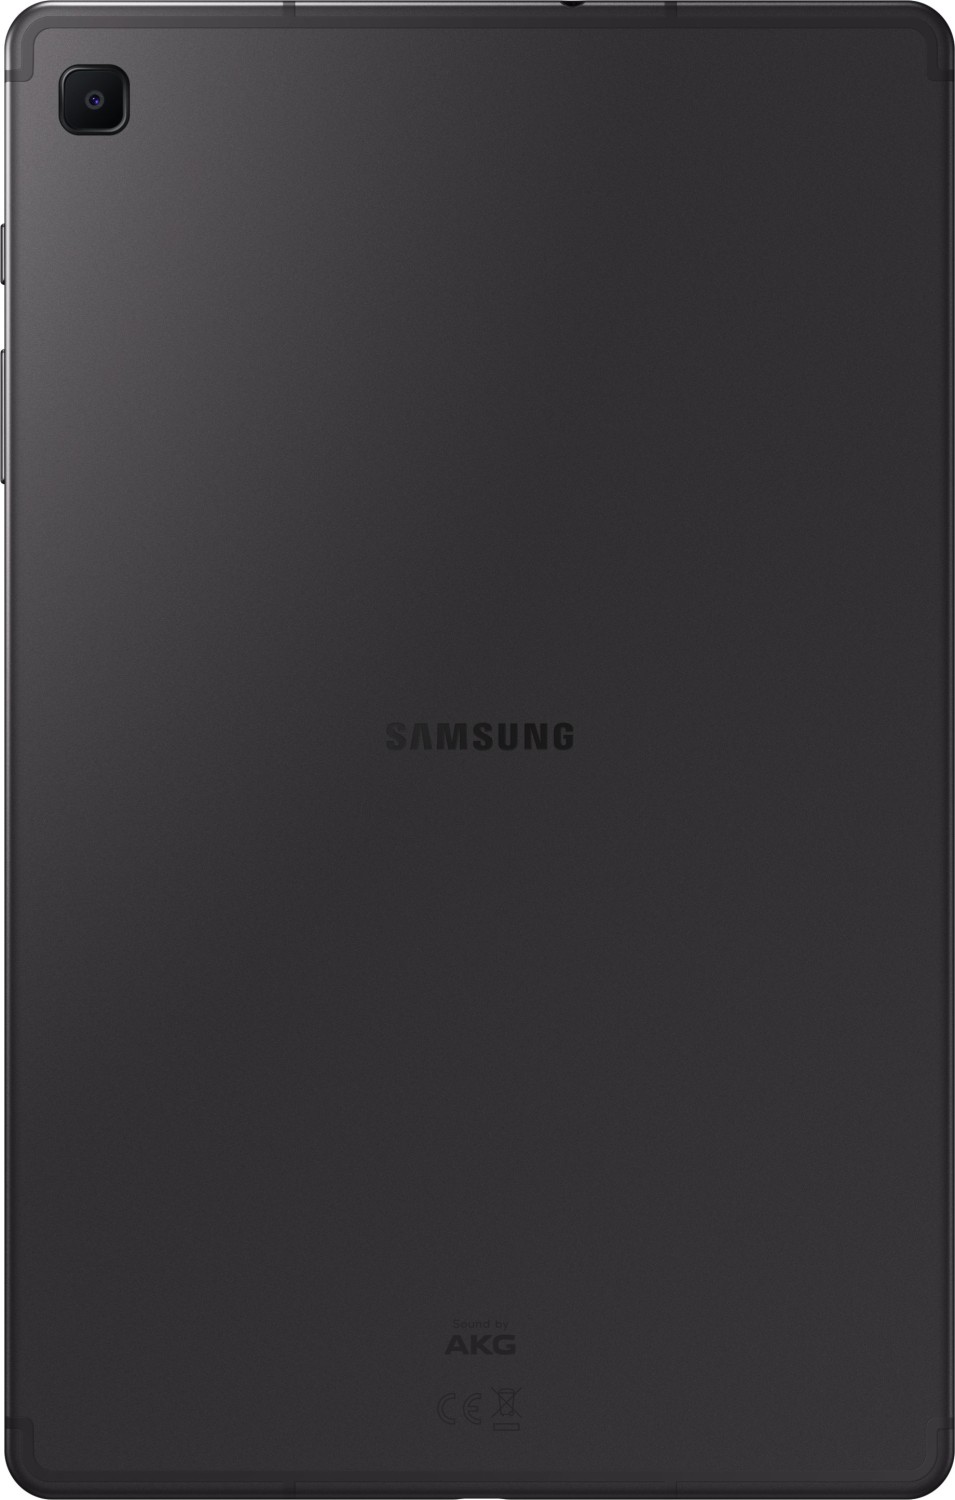 Samsung Galaxy Tab S6 Lite inkl. Stift